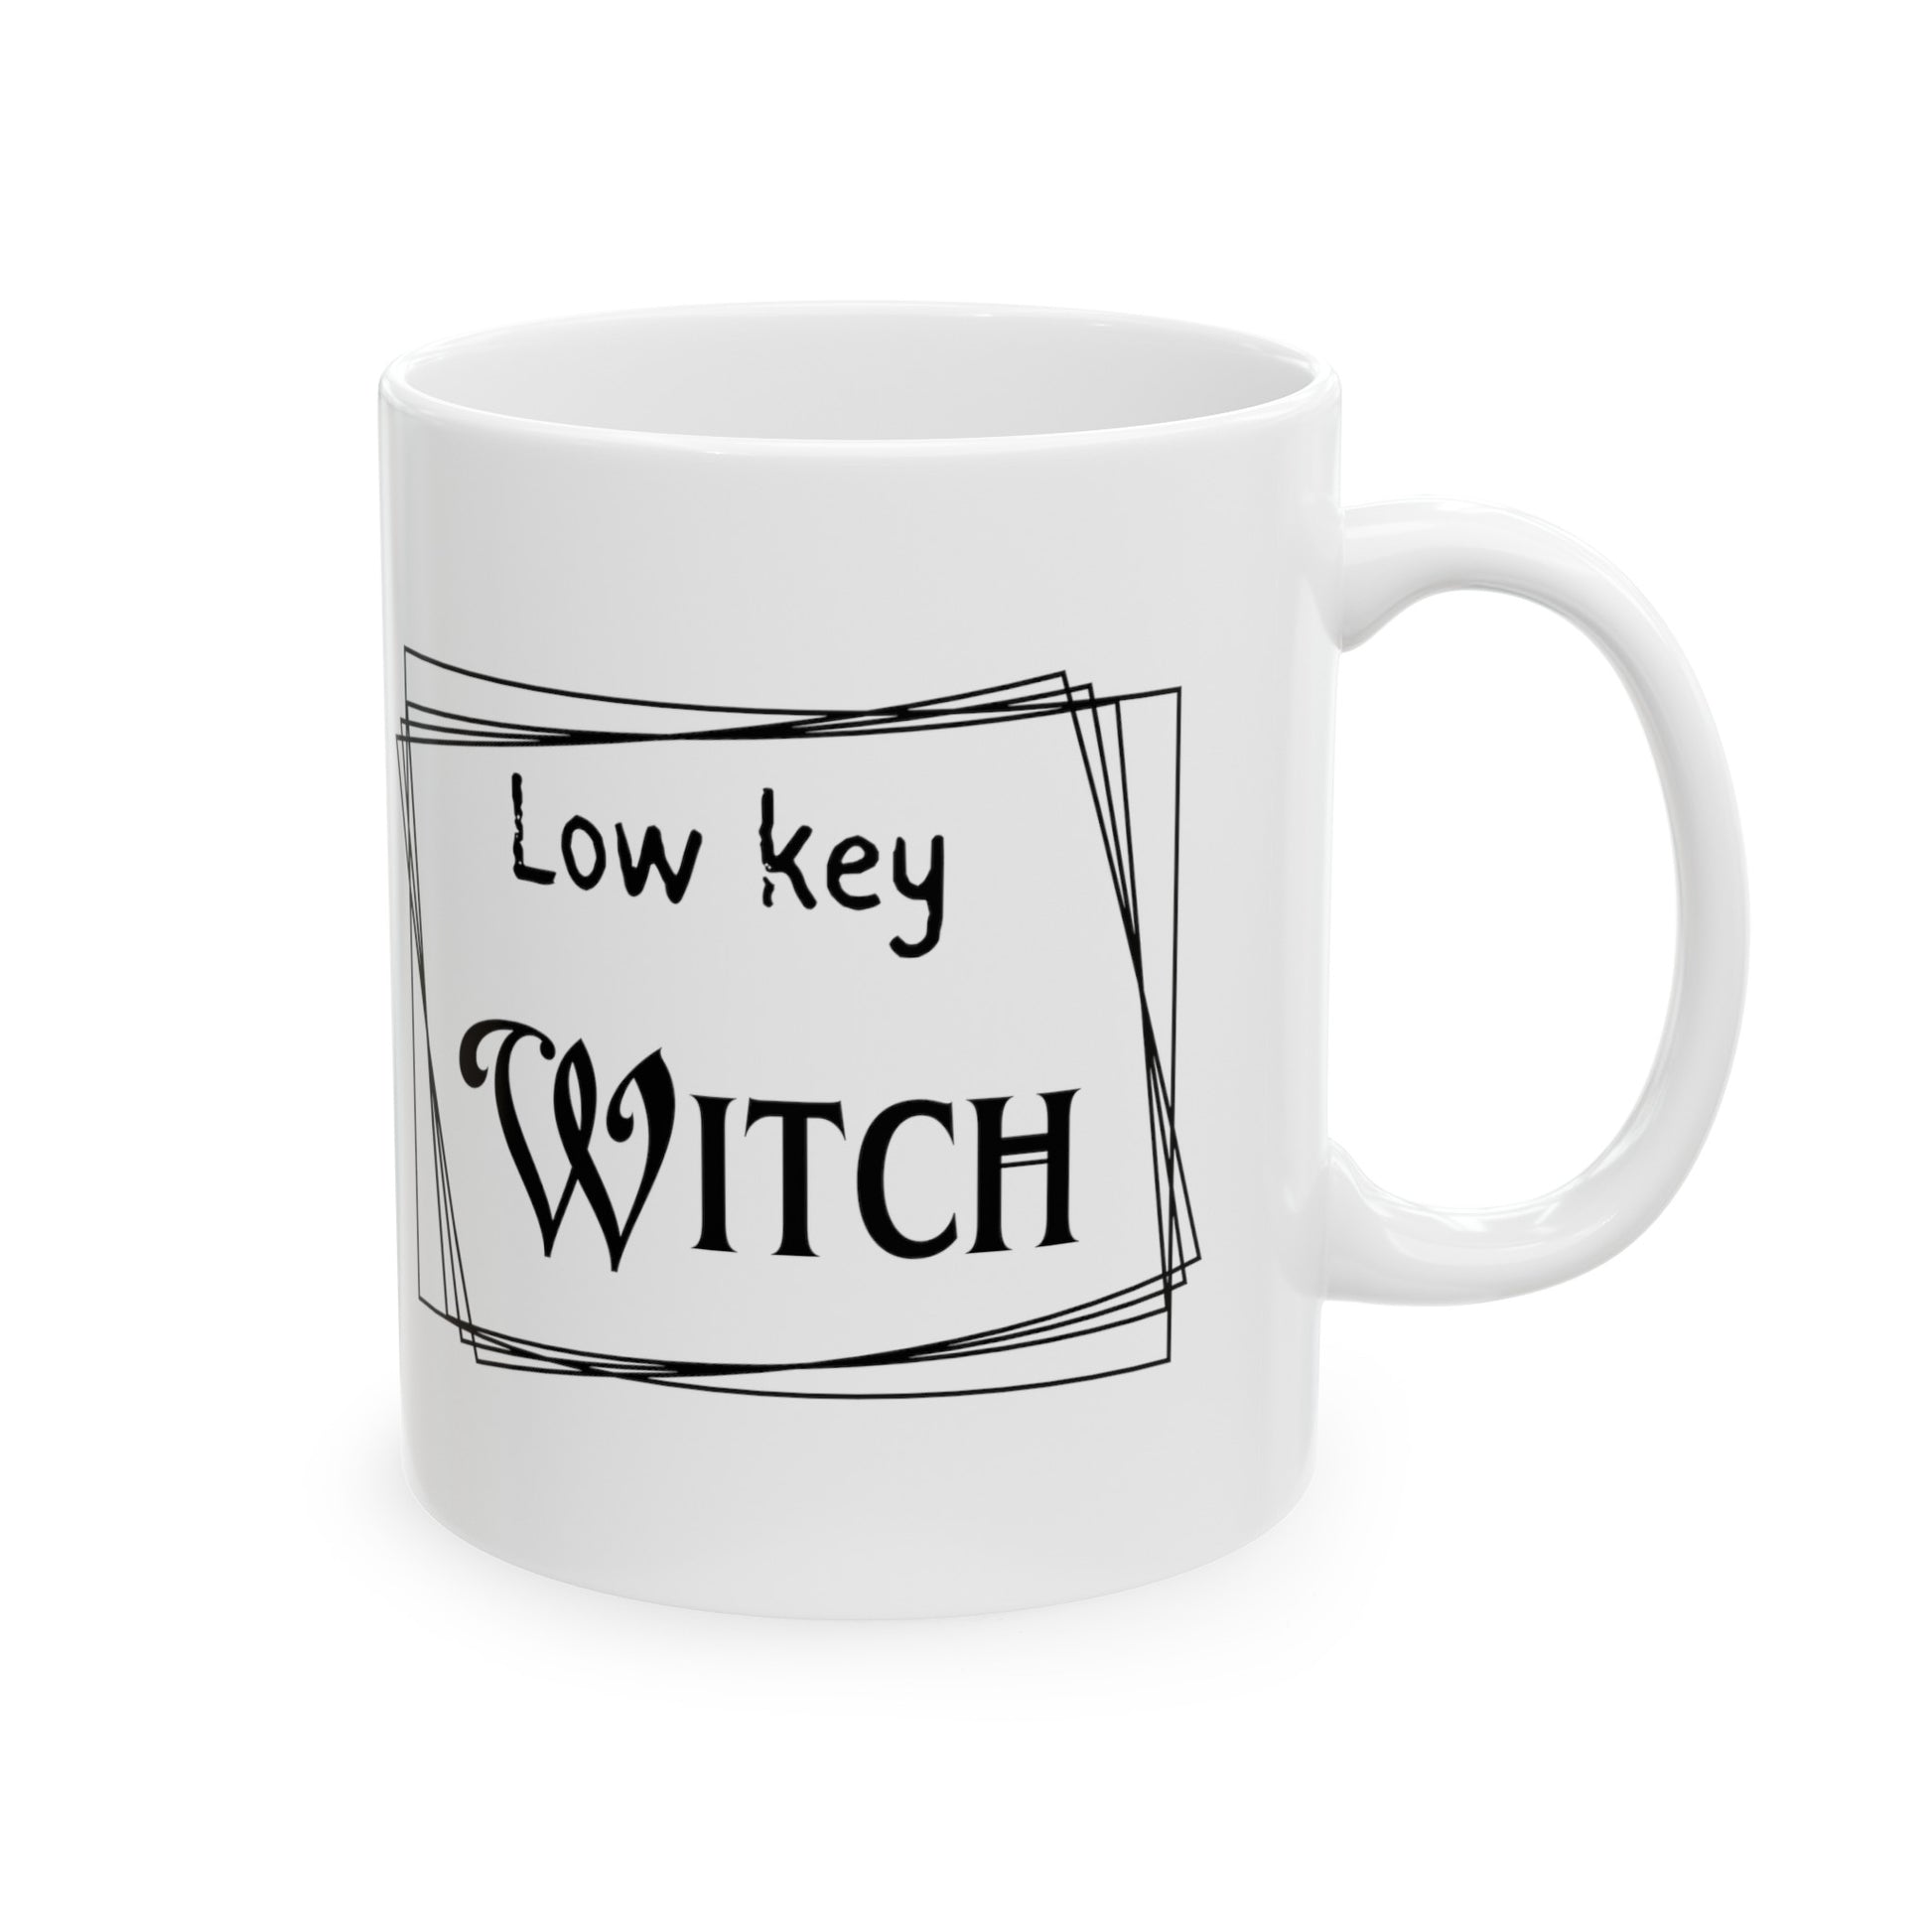 Low Key Witch Ceramic Mug - The Witchy Gypsy